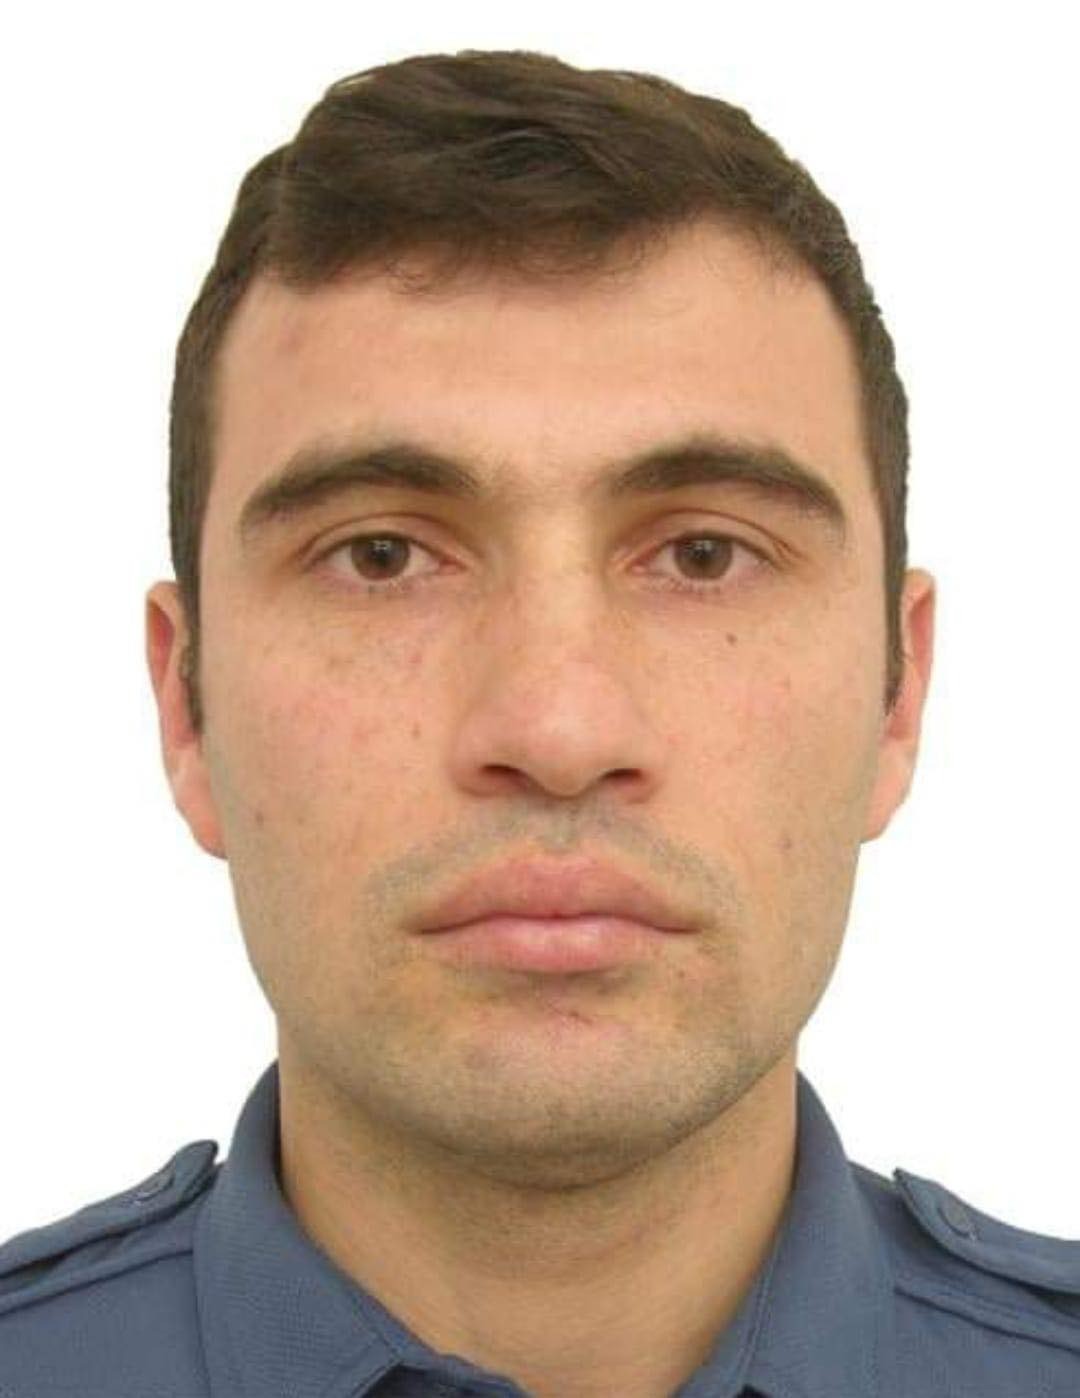 Kahramanmaraşlı polis memuru, görevi başında yaşanan kazada hayatını kaybetti #kahramanmaras